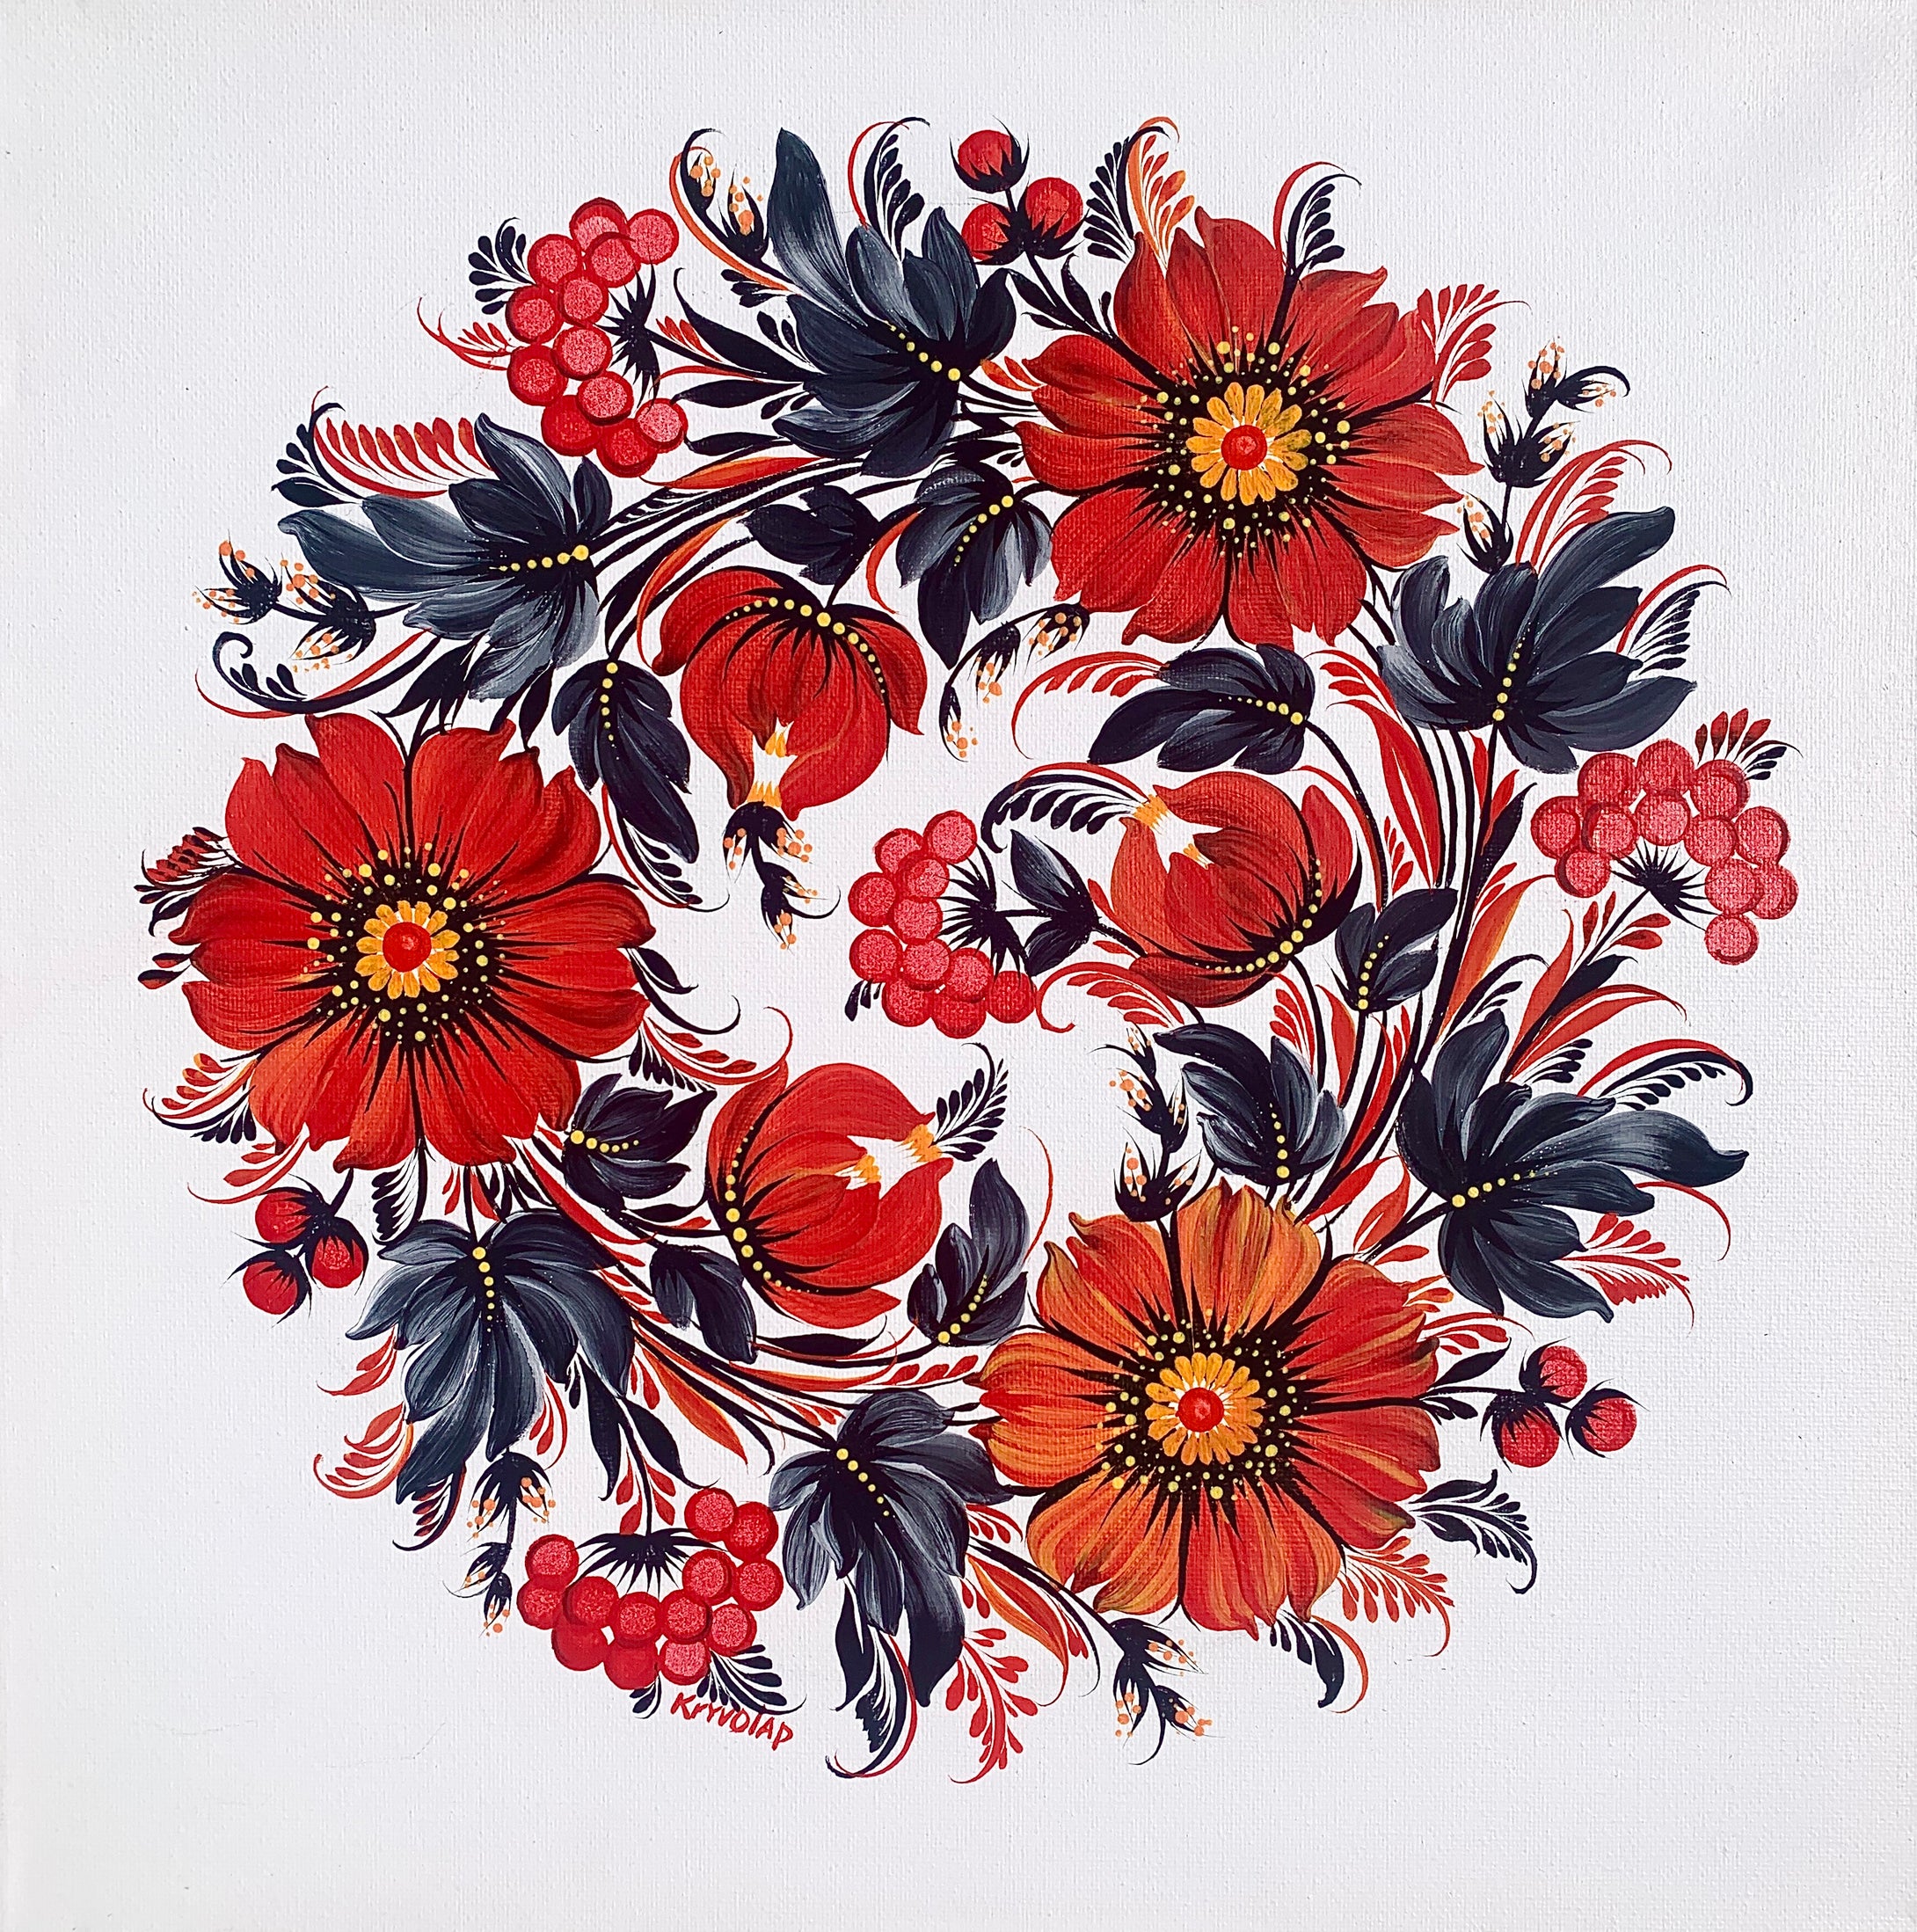 FLOWER MEDALLION 10 - 14 in x 14 in (35.5 cm x 35.5 cm)